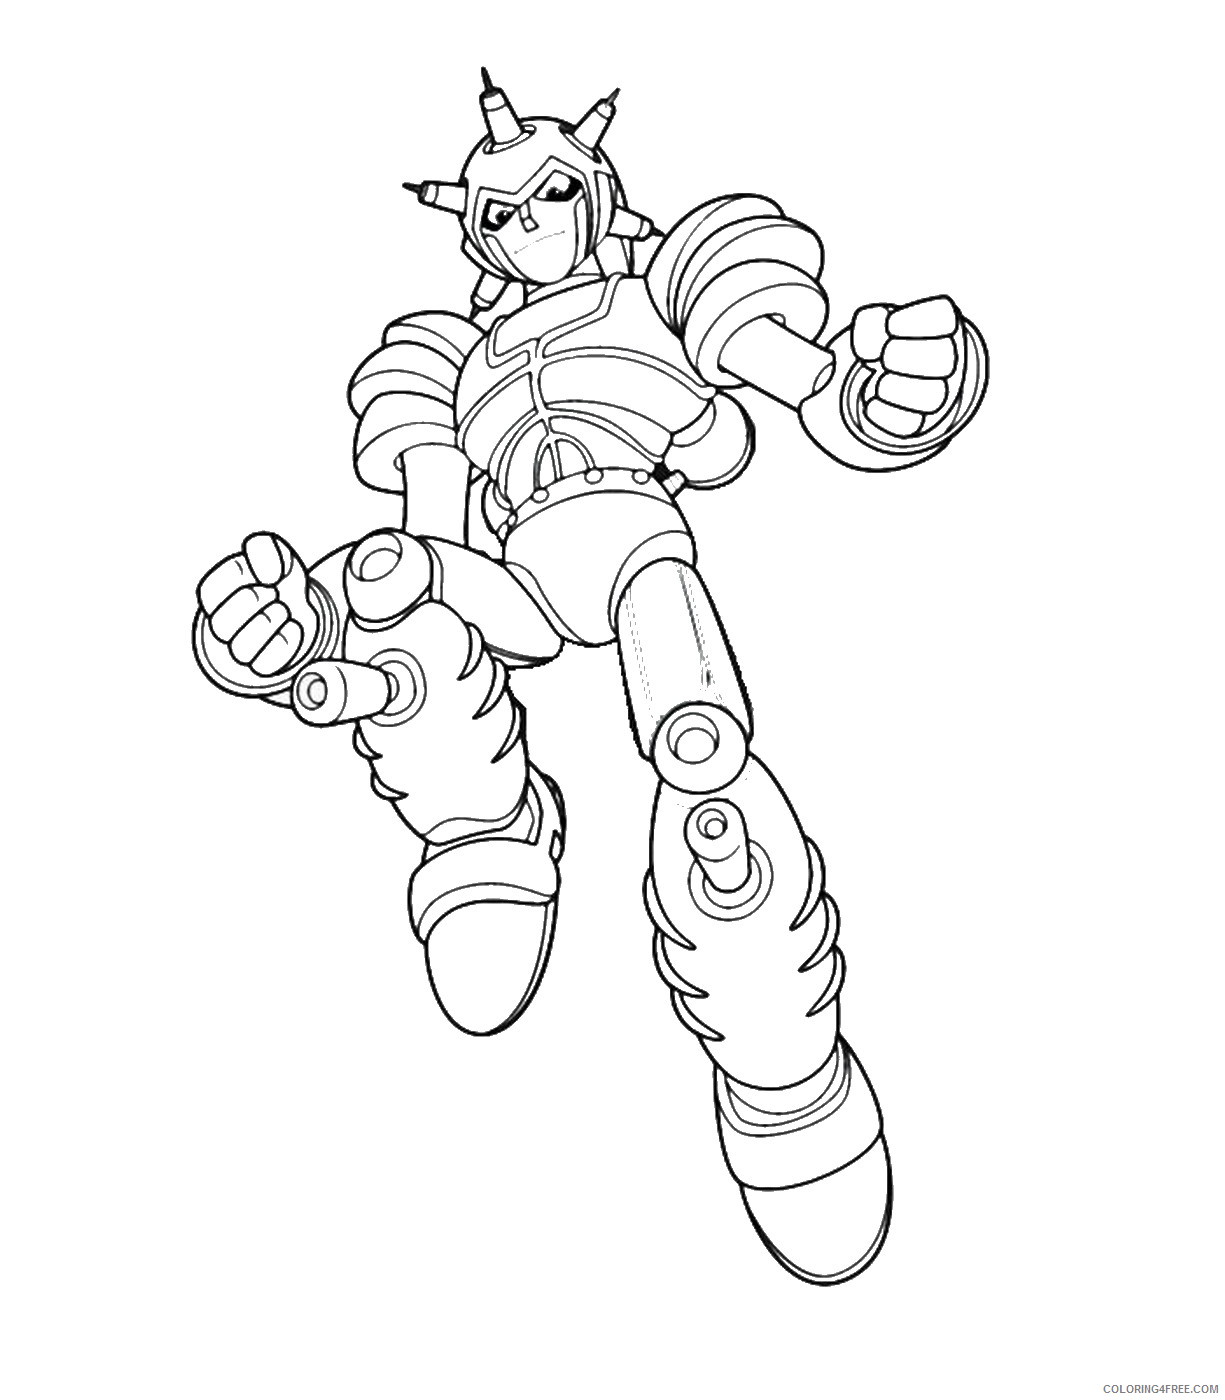 Astro Boy Coloring Pages Cartoons astro_boy_cl_13 Printable 2020 0713 Coloring4free